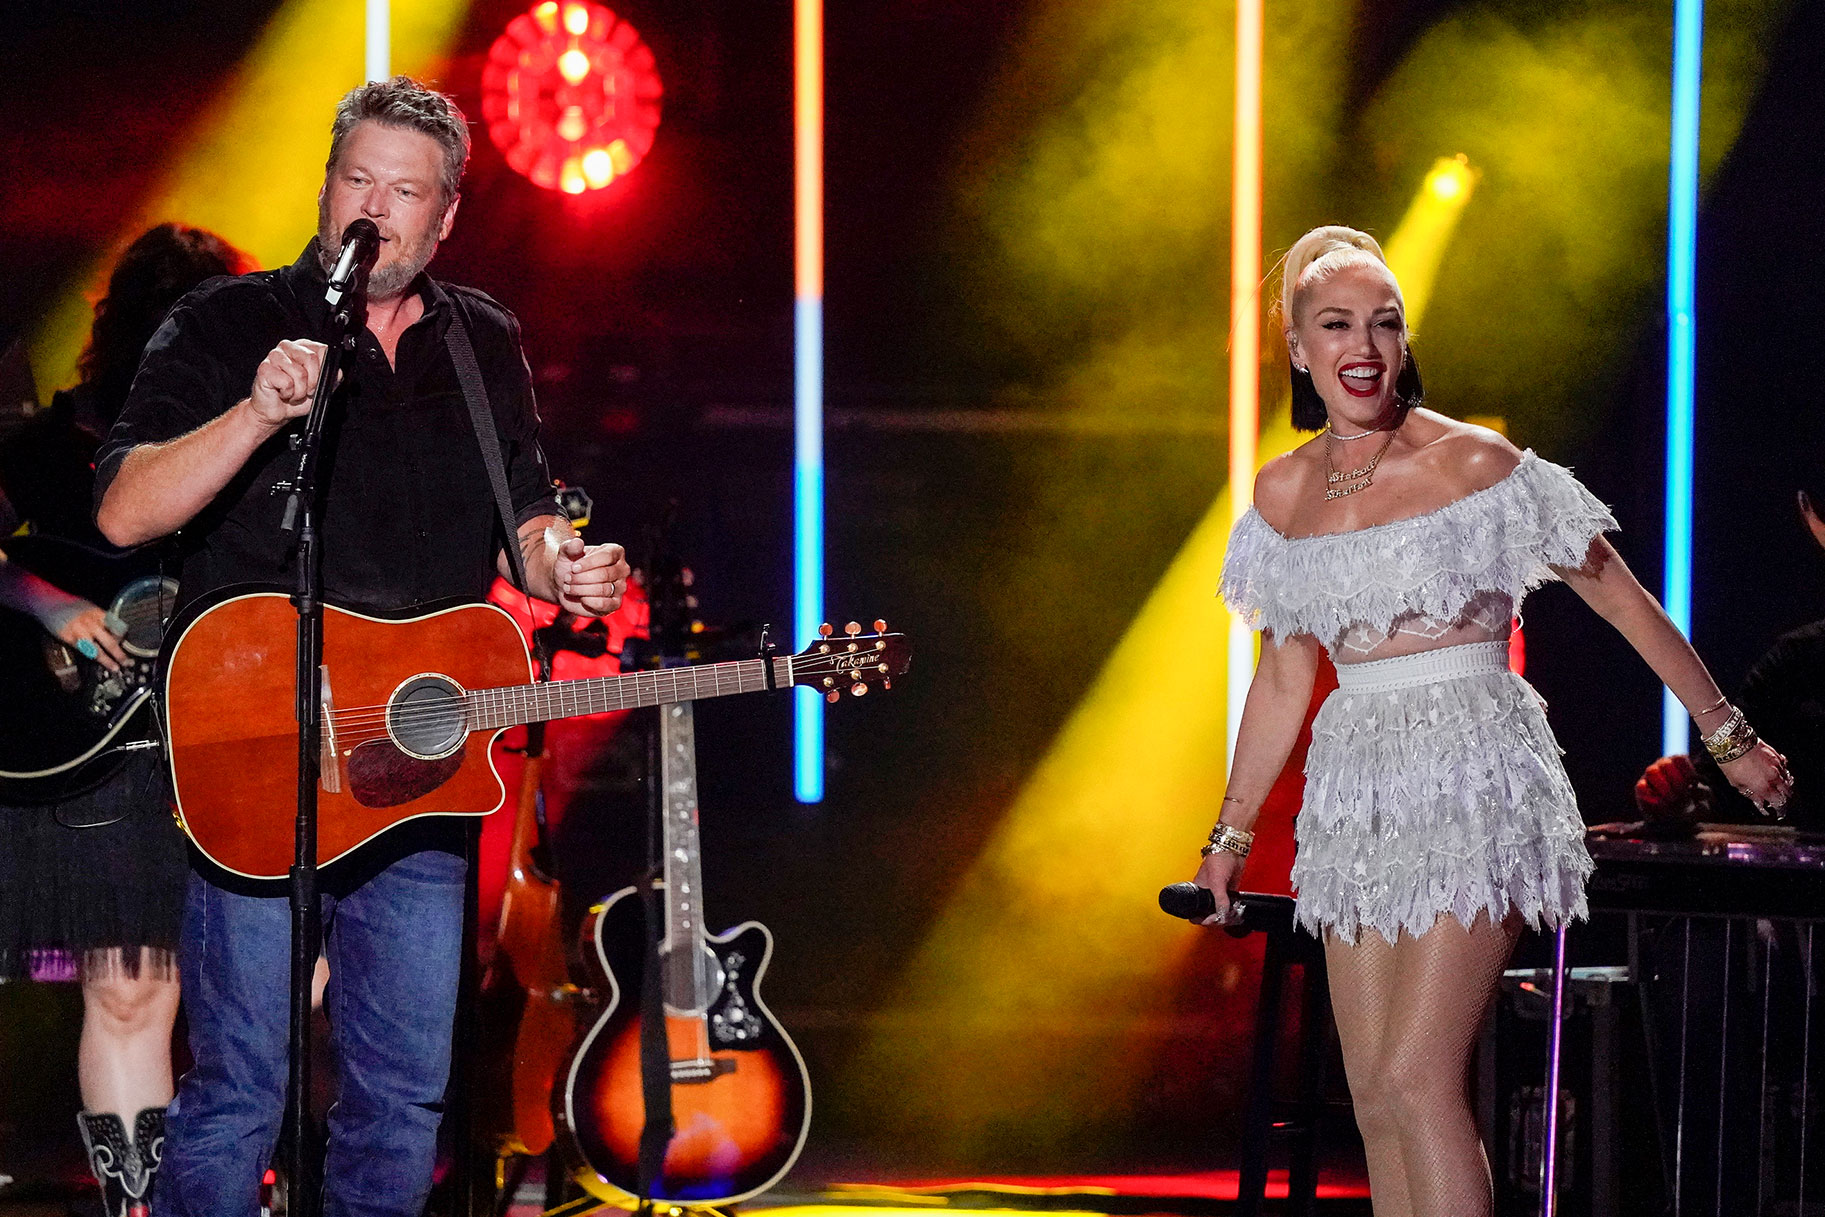 Gwen Stefani and Blake Shelton performing onstage